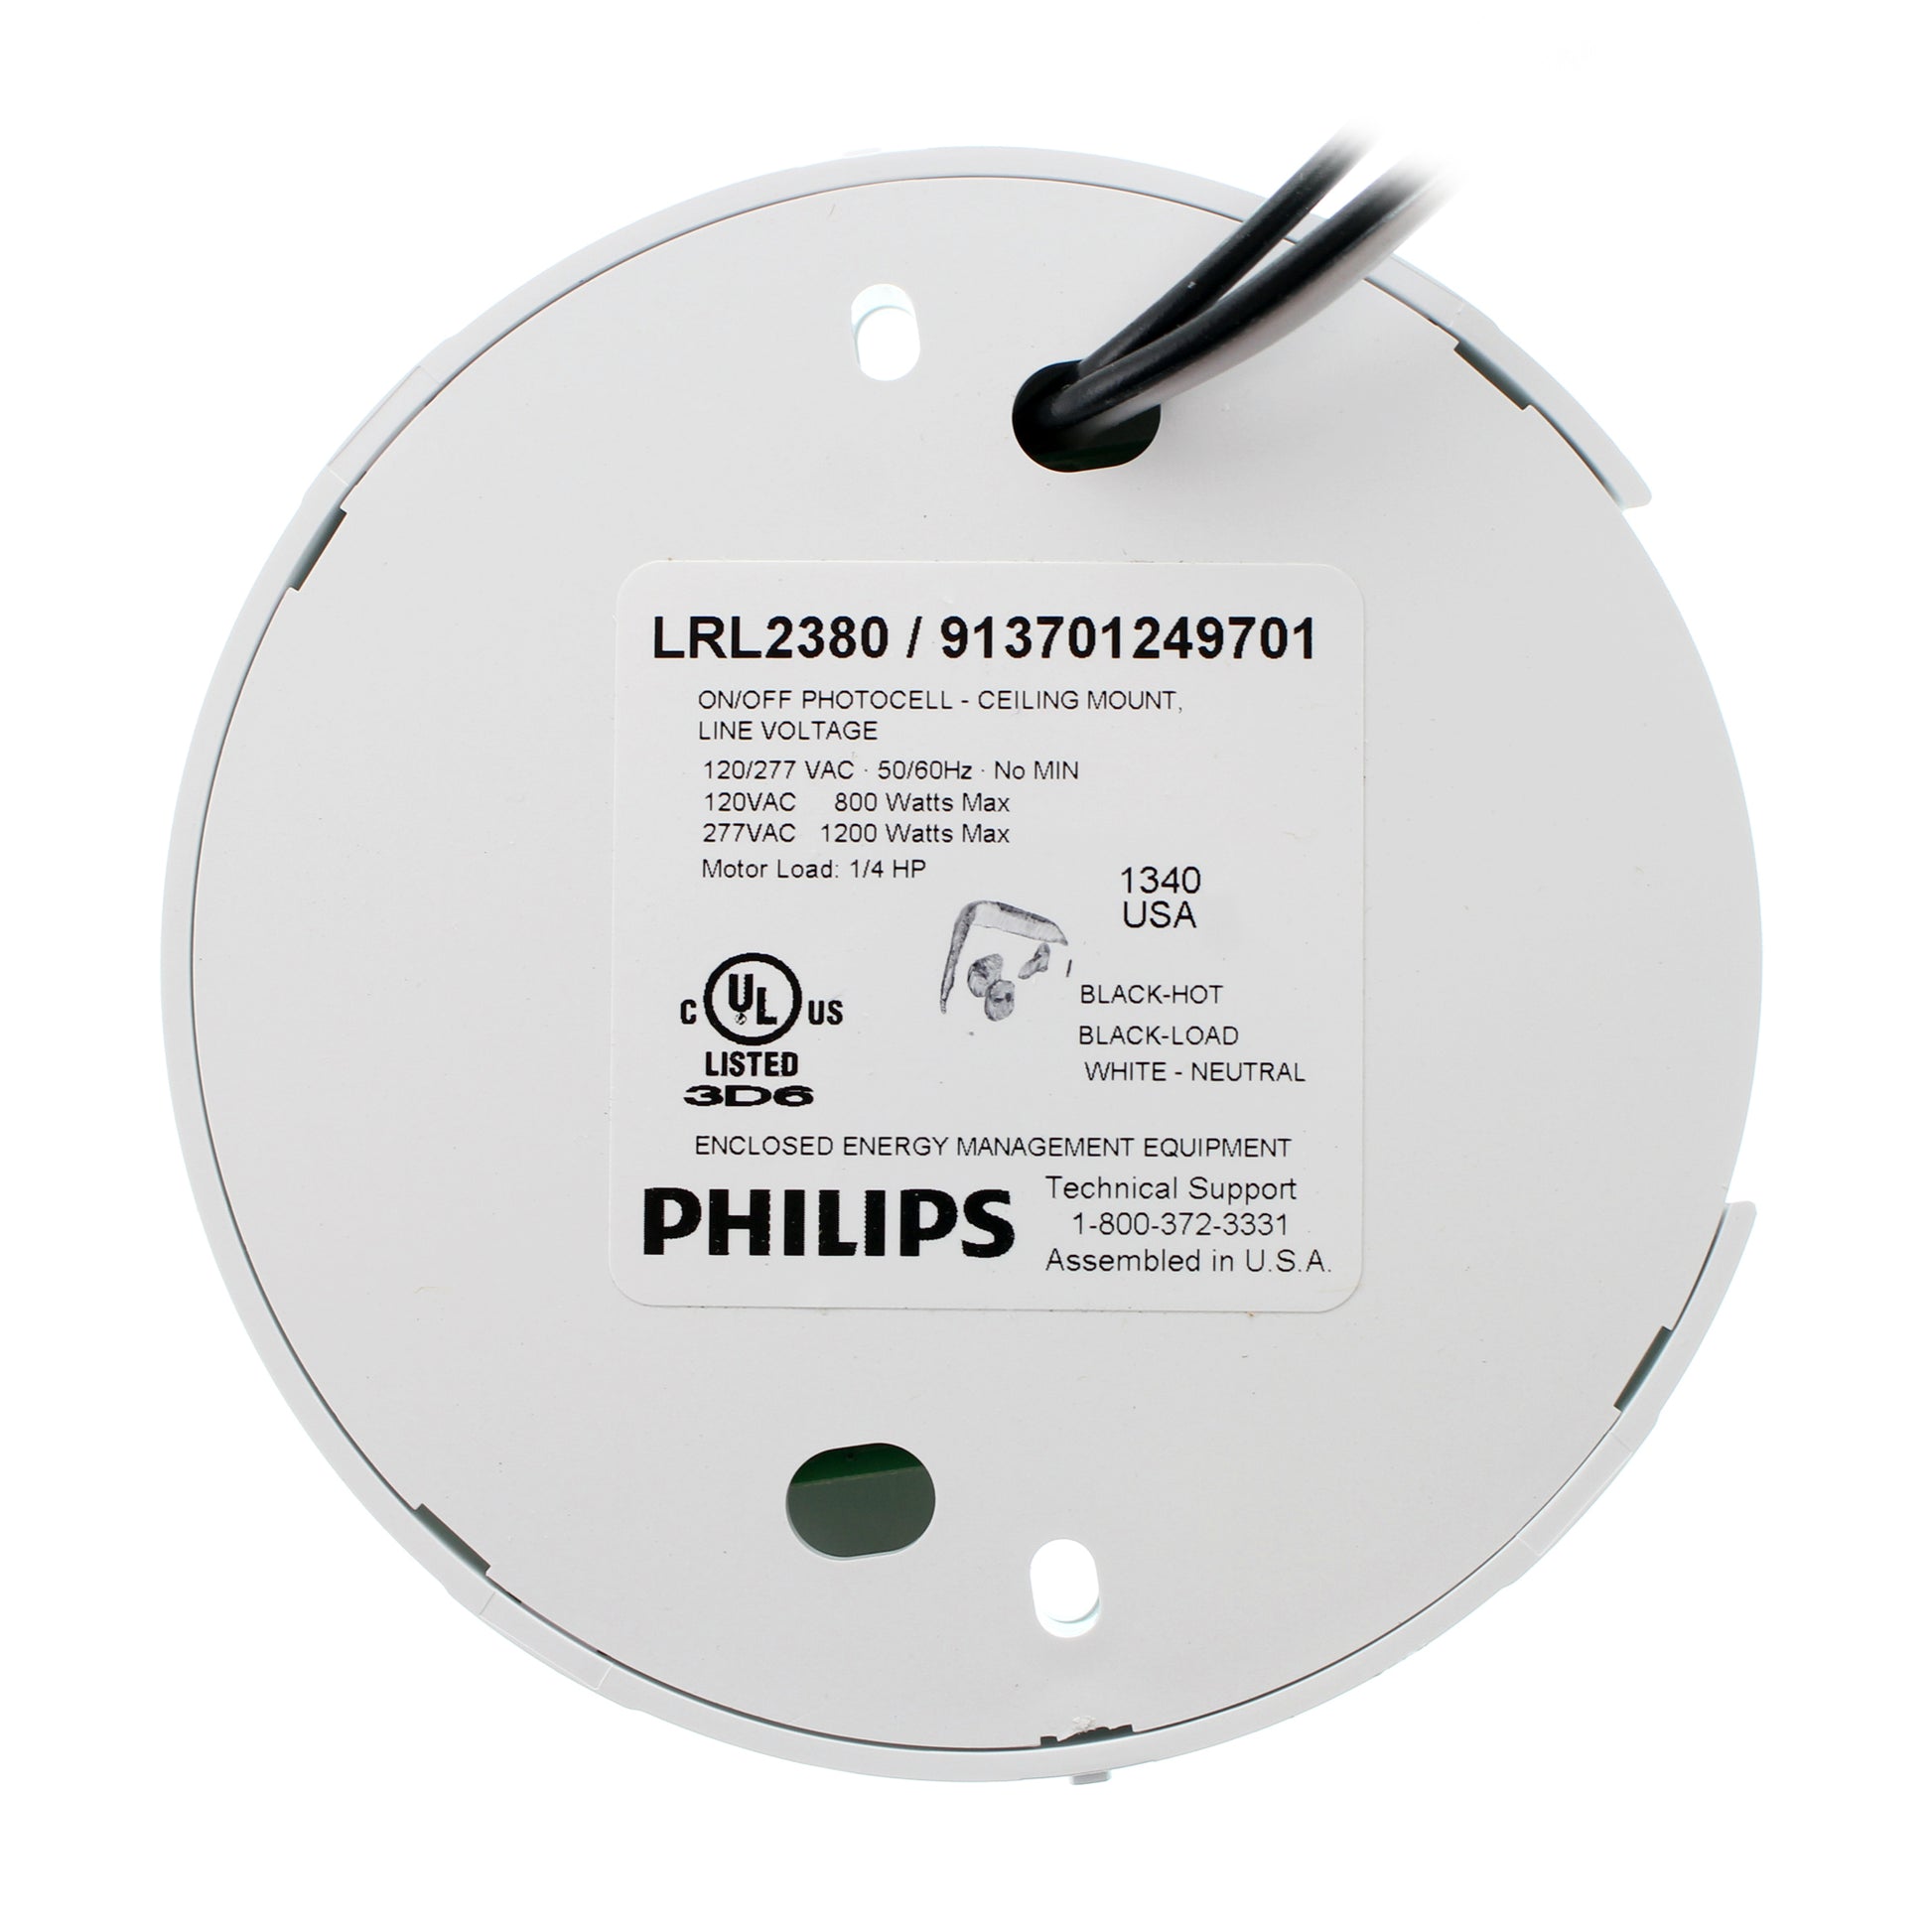 Phillips Lighting LRL2380